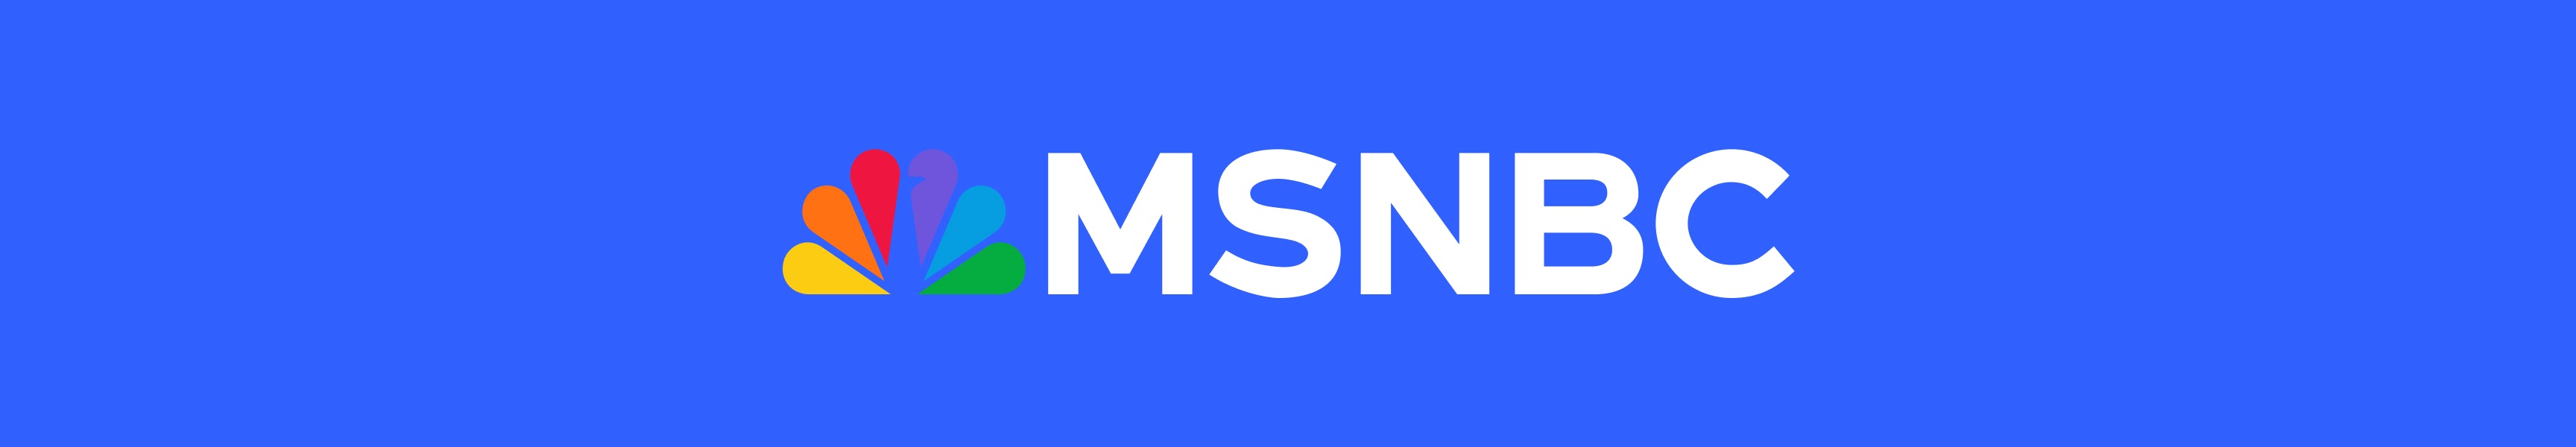 MSNBC Notebooks & Journals